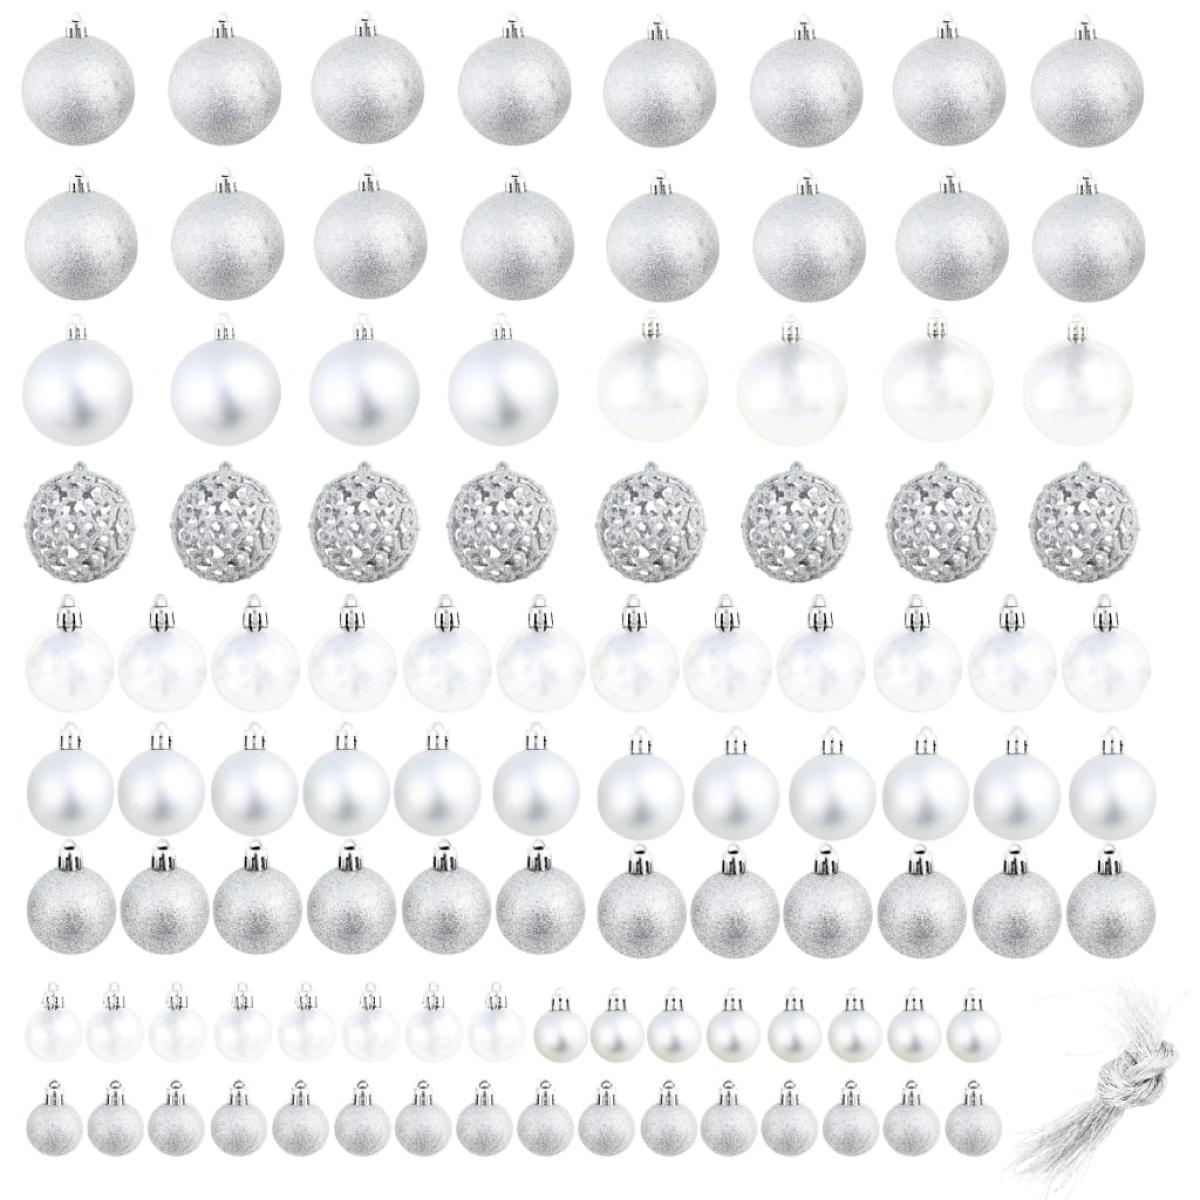 Lote de bolas de Navidad 100 unidades plateadas 3/4/6 cm